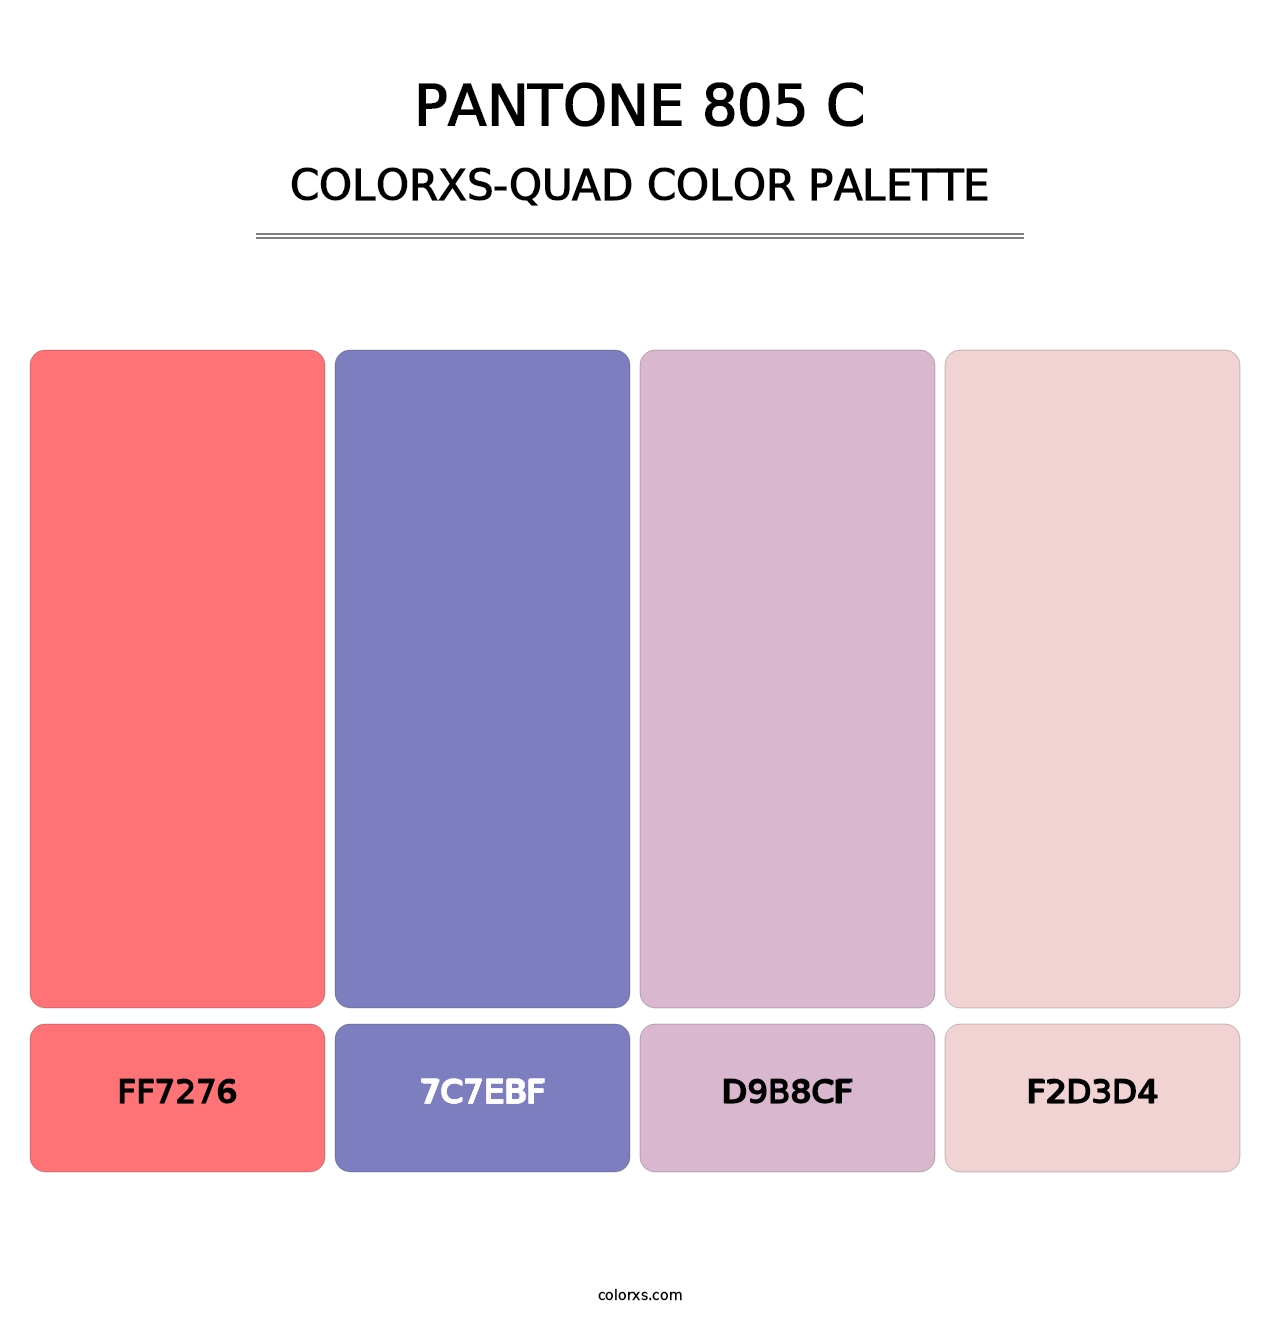 PANTONE 805 C - Colorxs Quad Palette